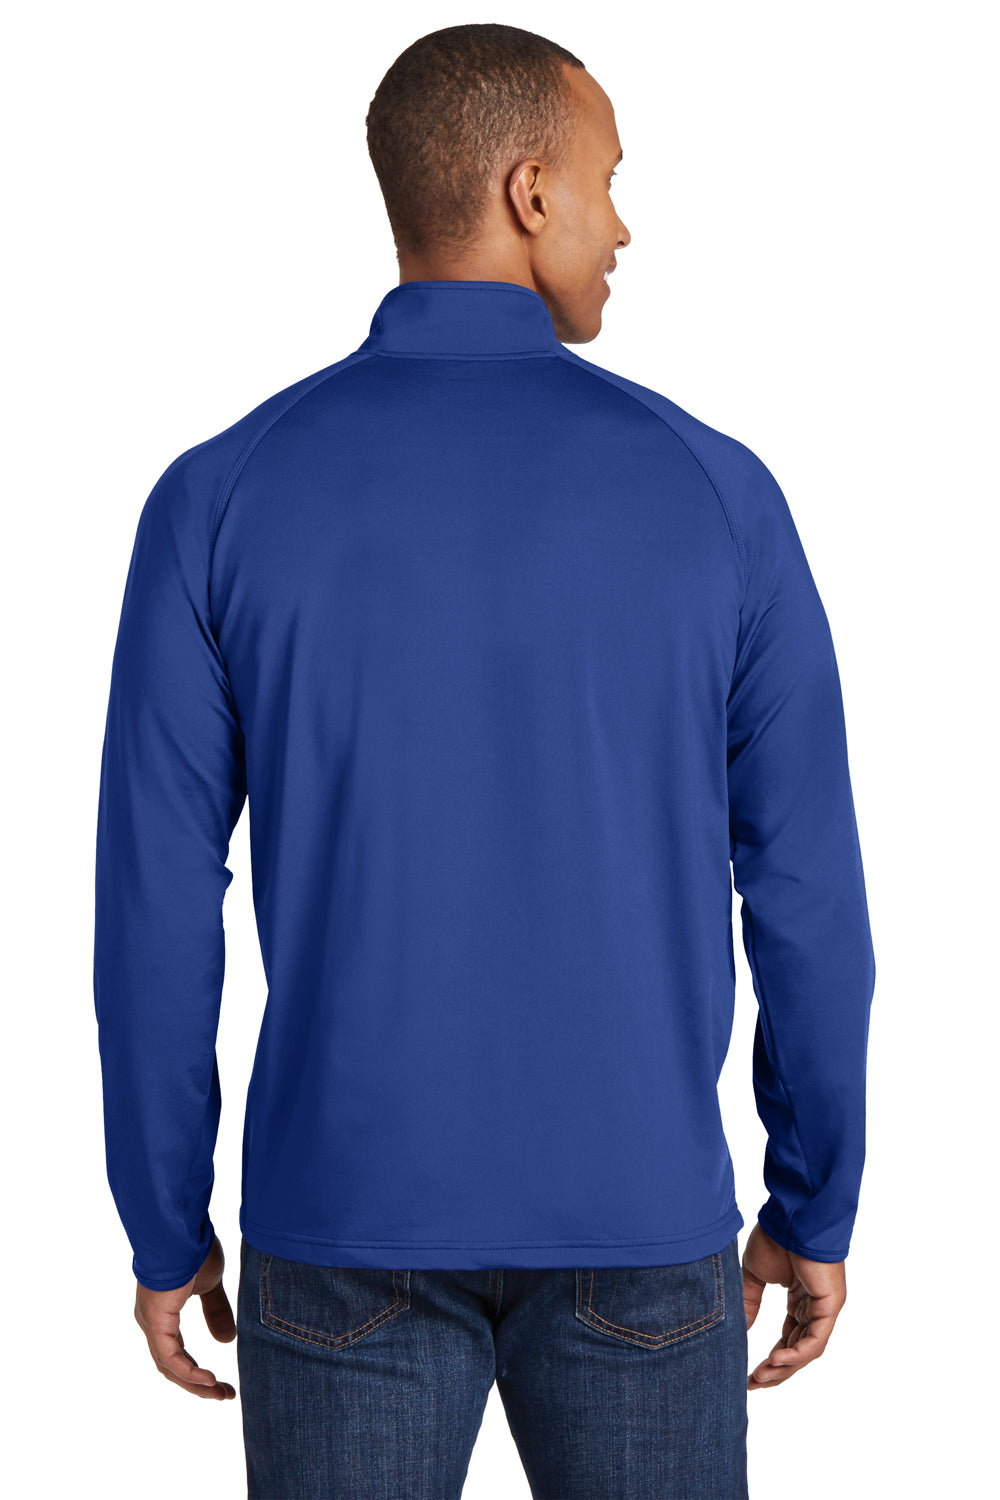 Sport-Tek ST850 Mens Sport-Wick Moisture Wicking 1/4 Zip Sweatshirt Royal Blue Back